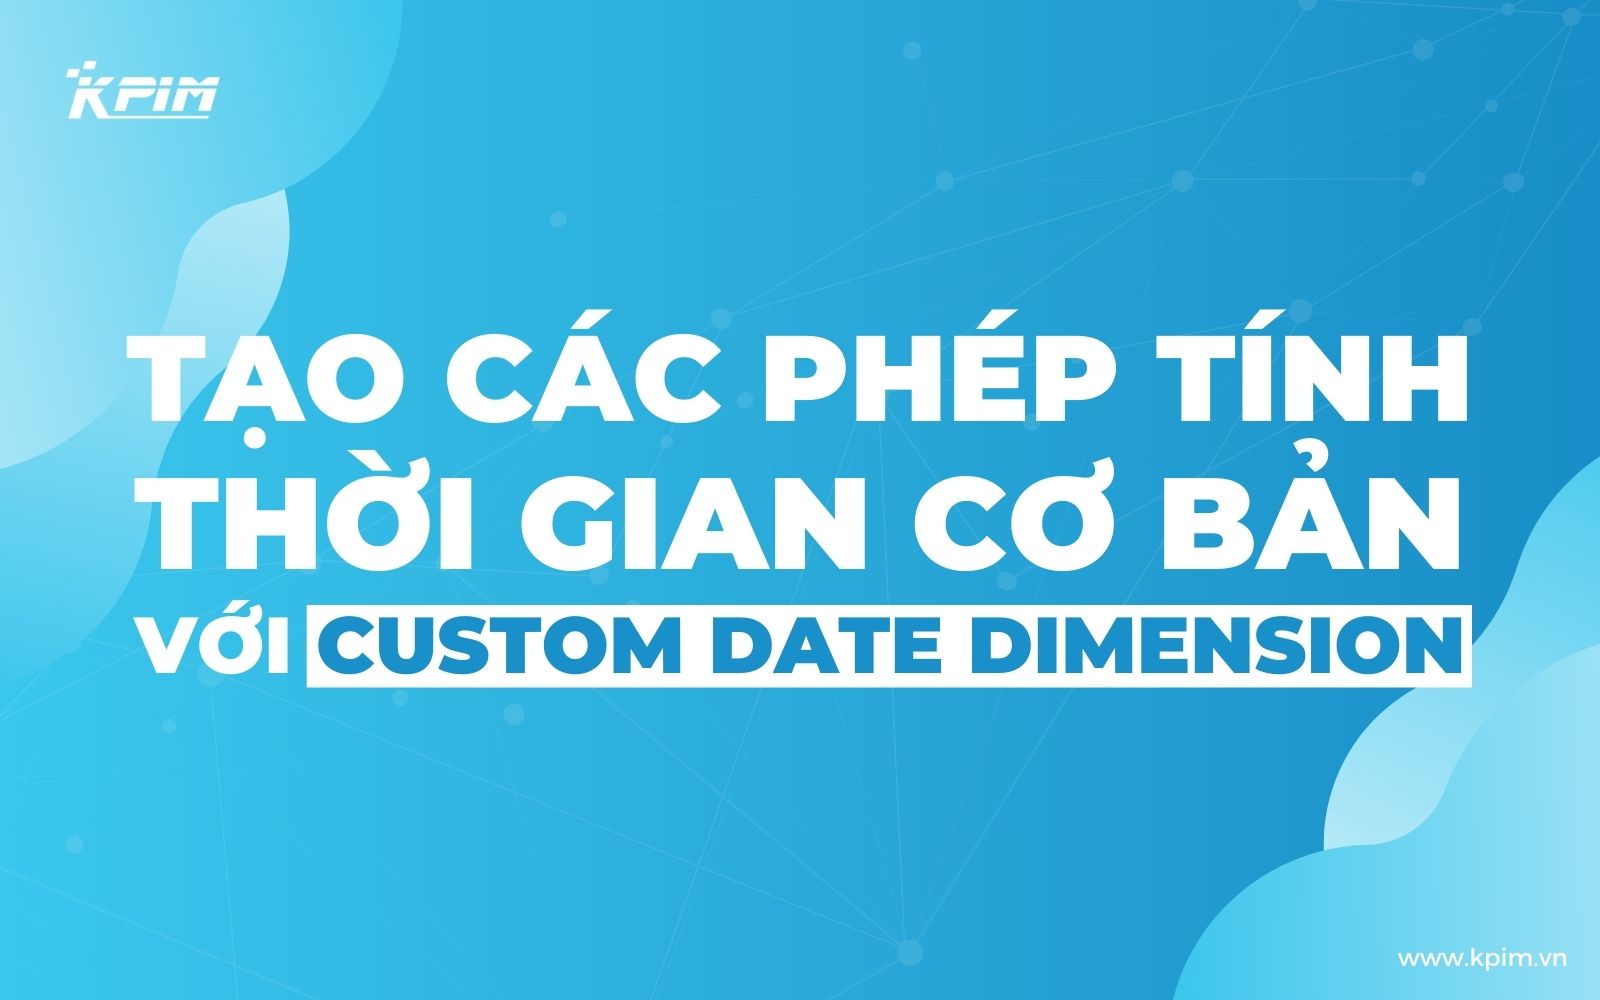 custom date dimension